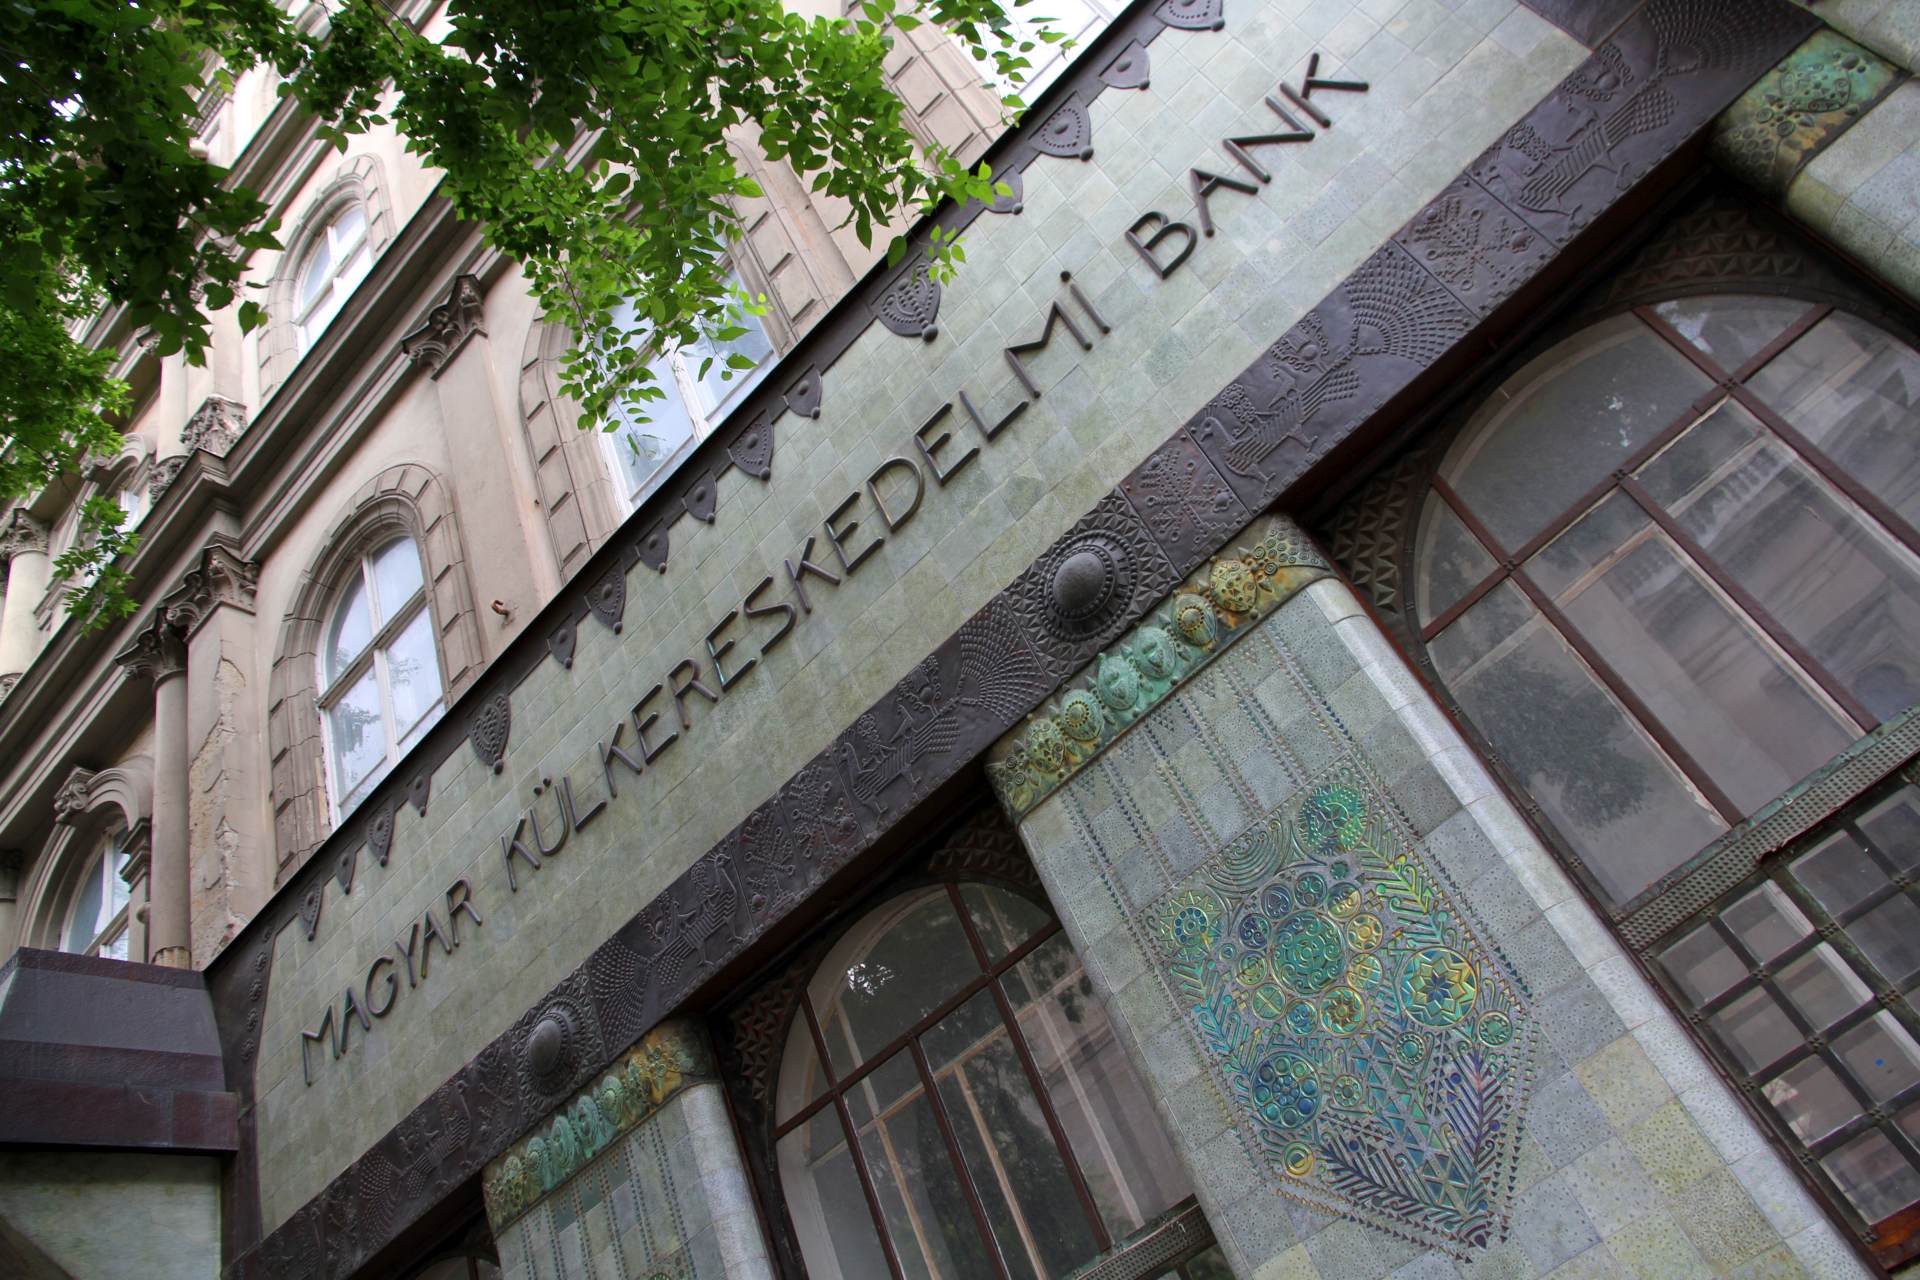  Maďarsko inflace banky společnost dluhopisy peníze 